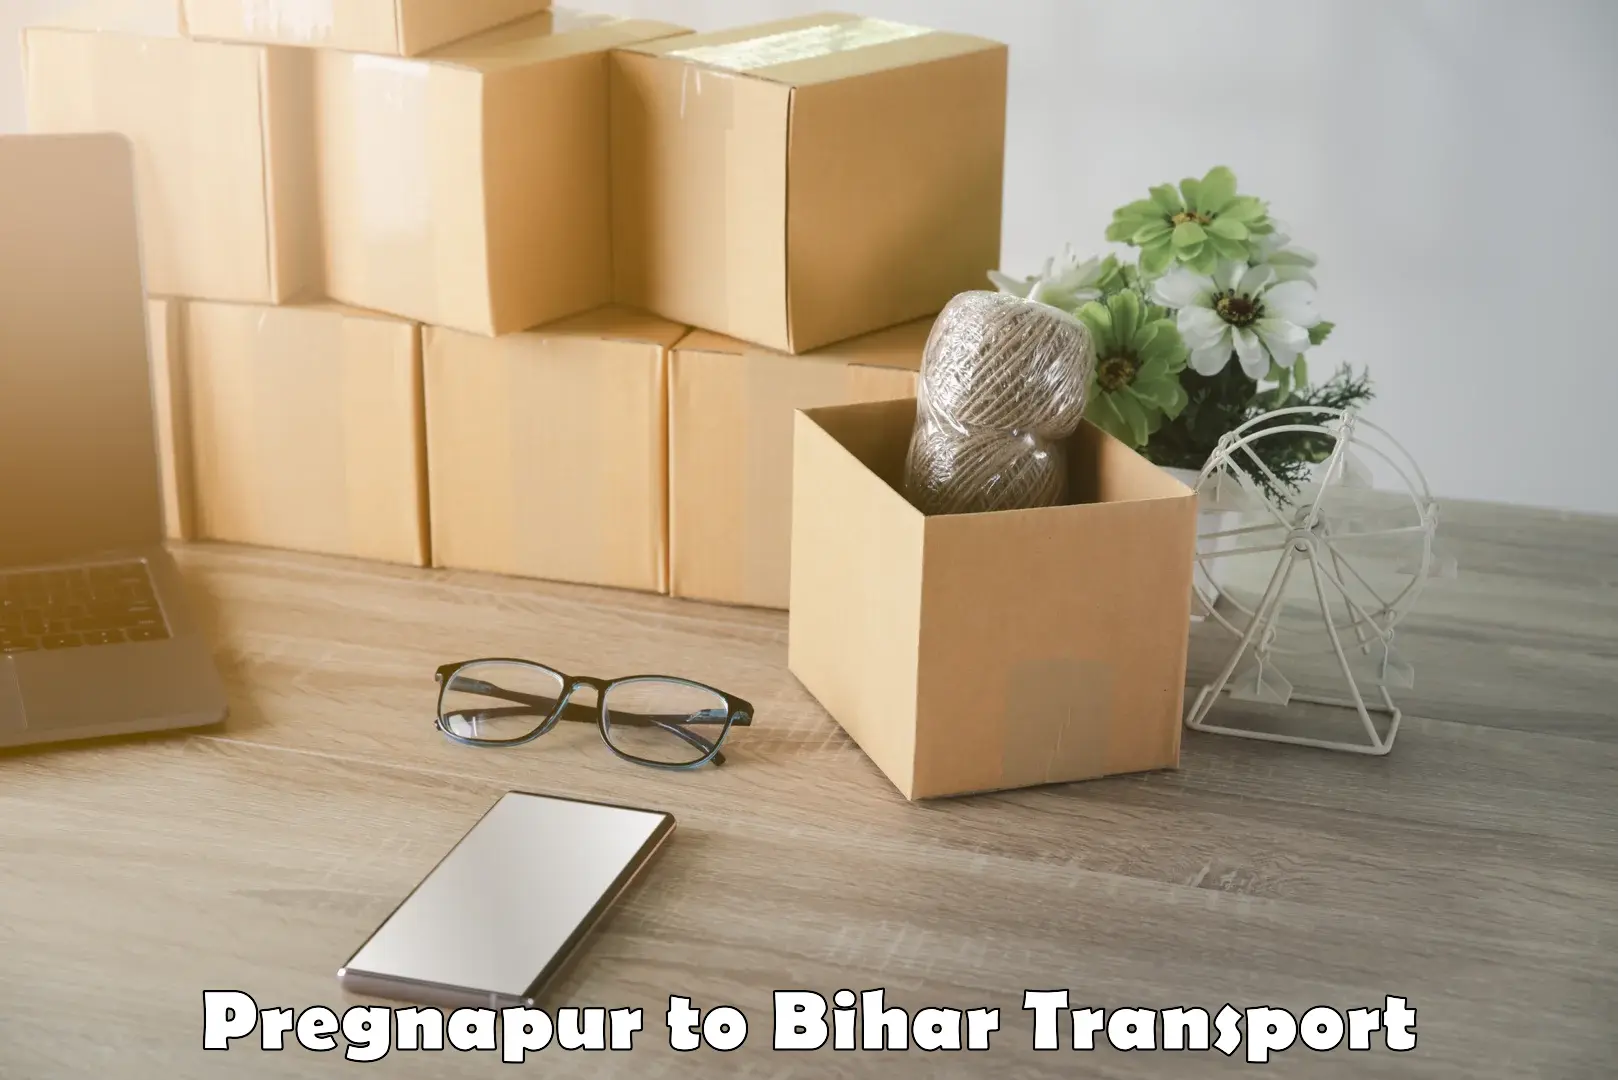 Container transport service Pregnapur to Bihar